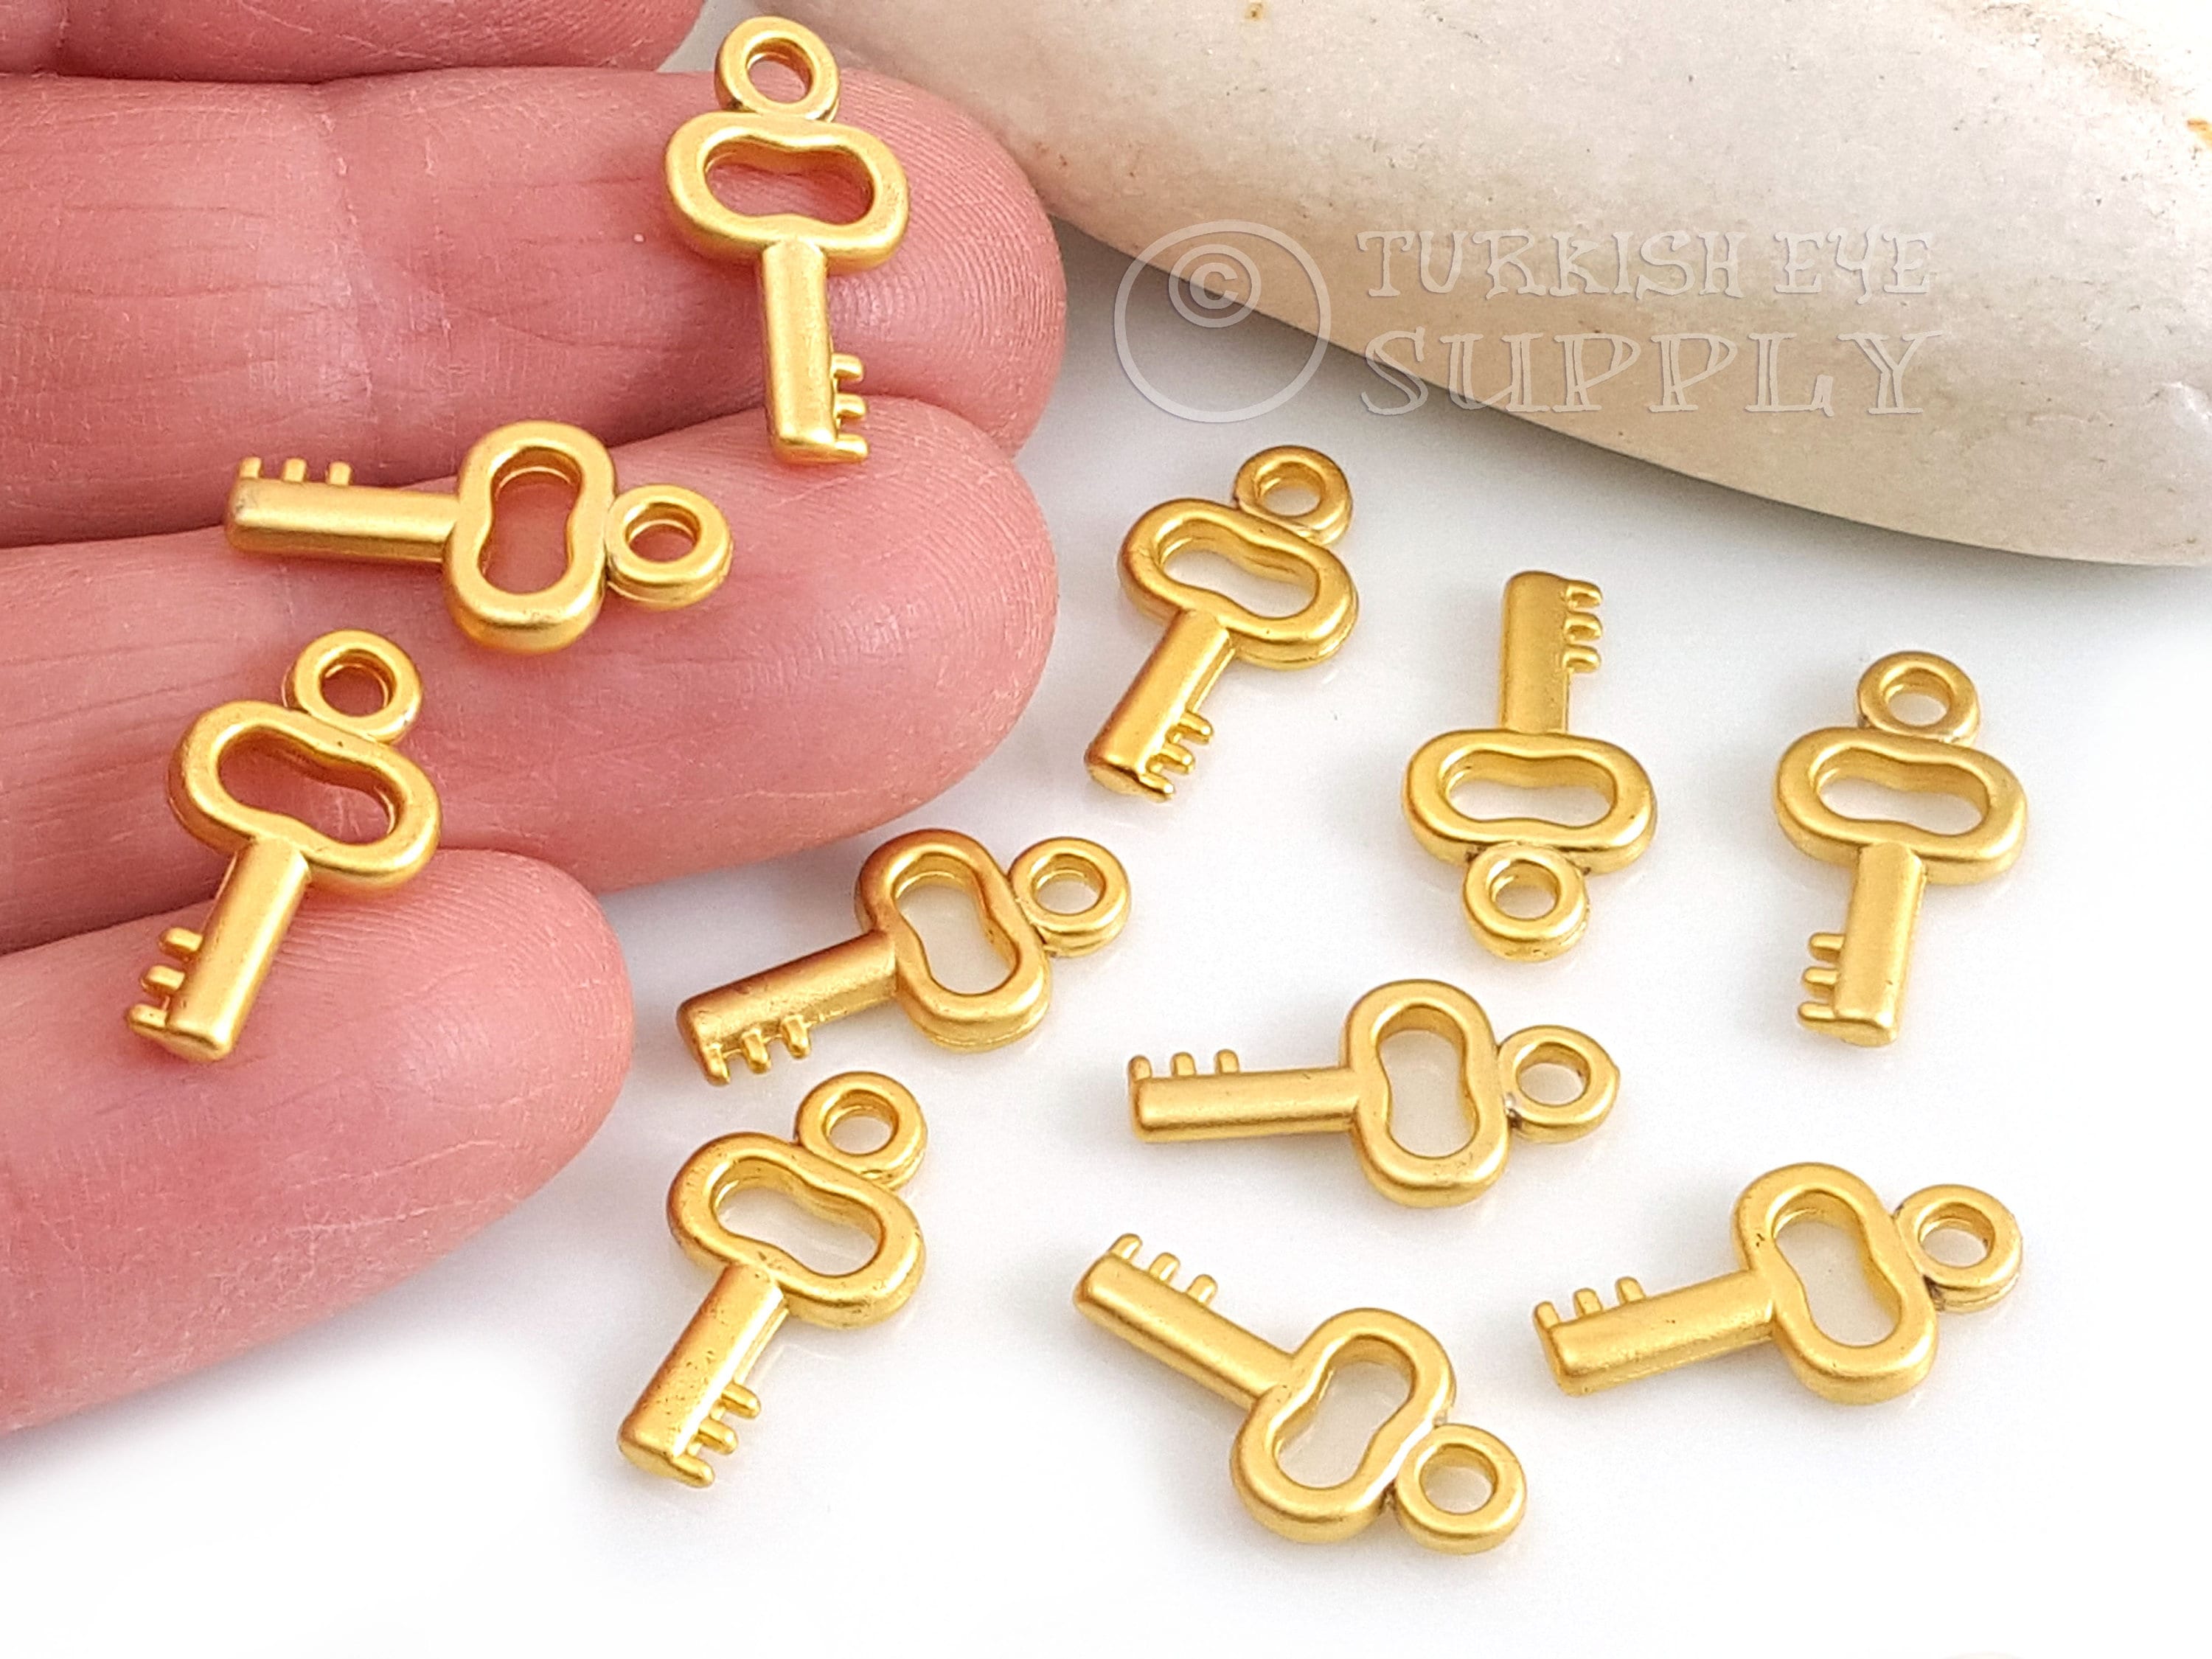 Gold Key Charms, Mini Key Charms, Key Charms, Mini Gold Charms, Mini Key, Gold Jewelry Findings, Key Pendants, 2 PC